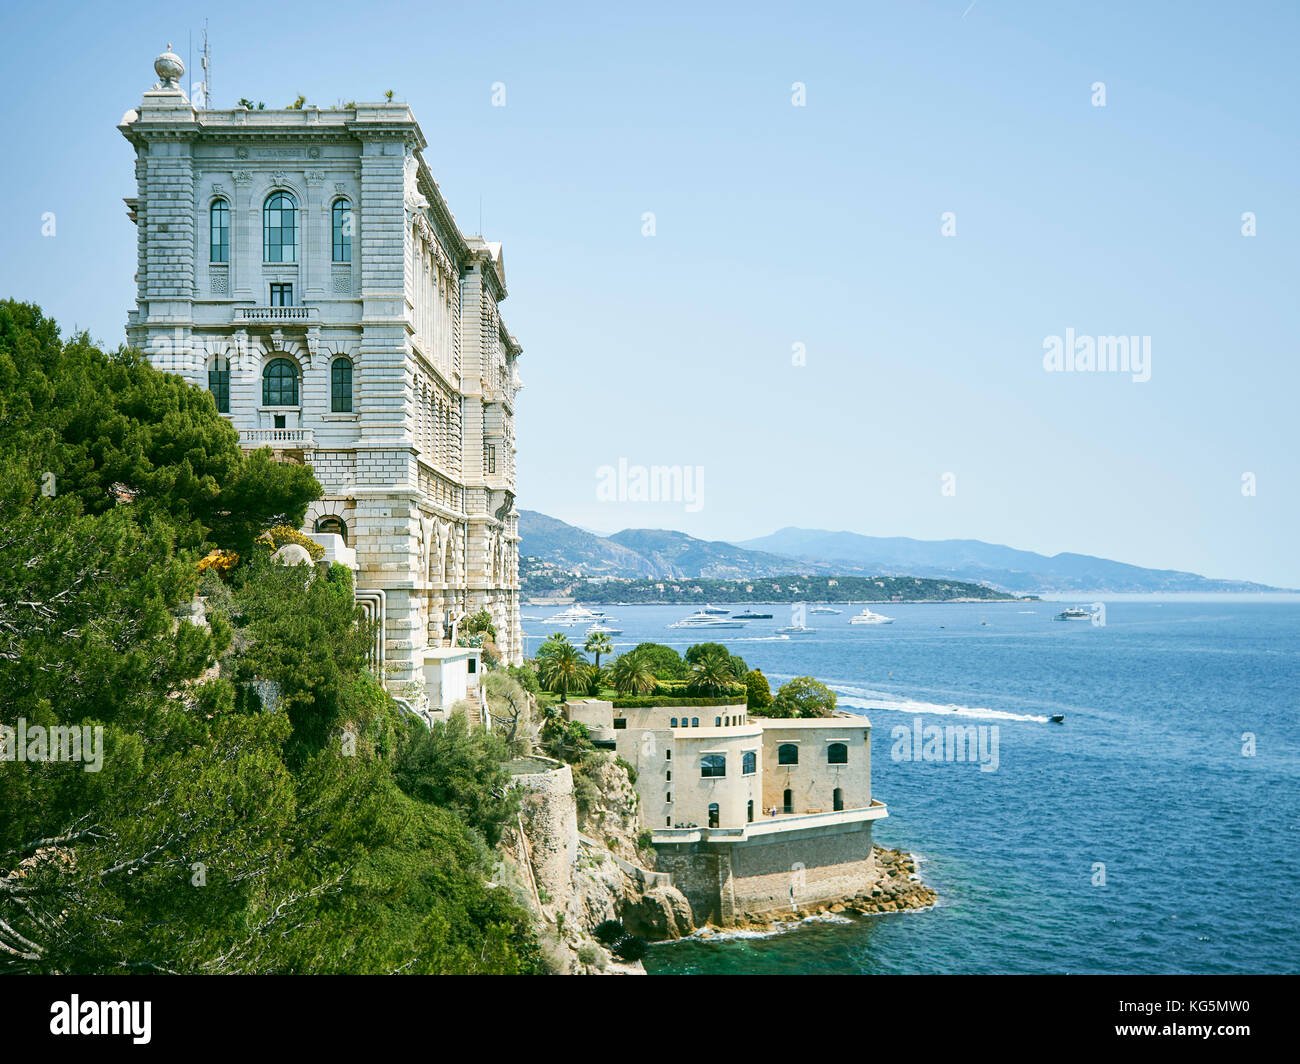 Ozeanographische Institut Museum von Monaco, Fürstentum Monaco, Cote d'Azur, Südfrankreich, Westeuropa, Europa Stockfoto